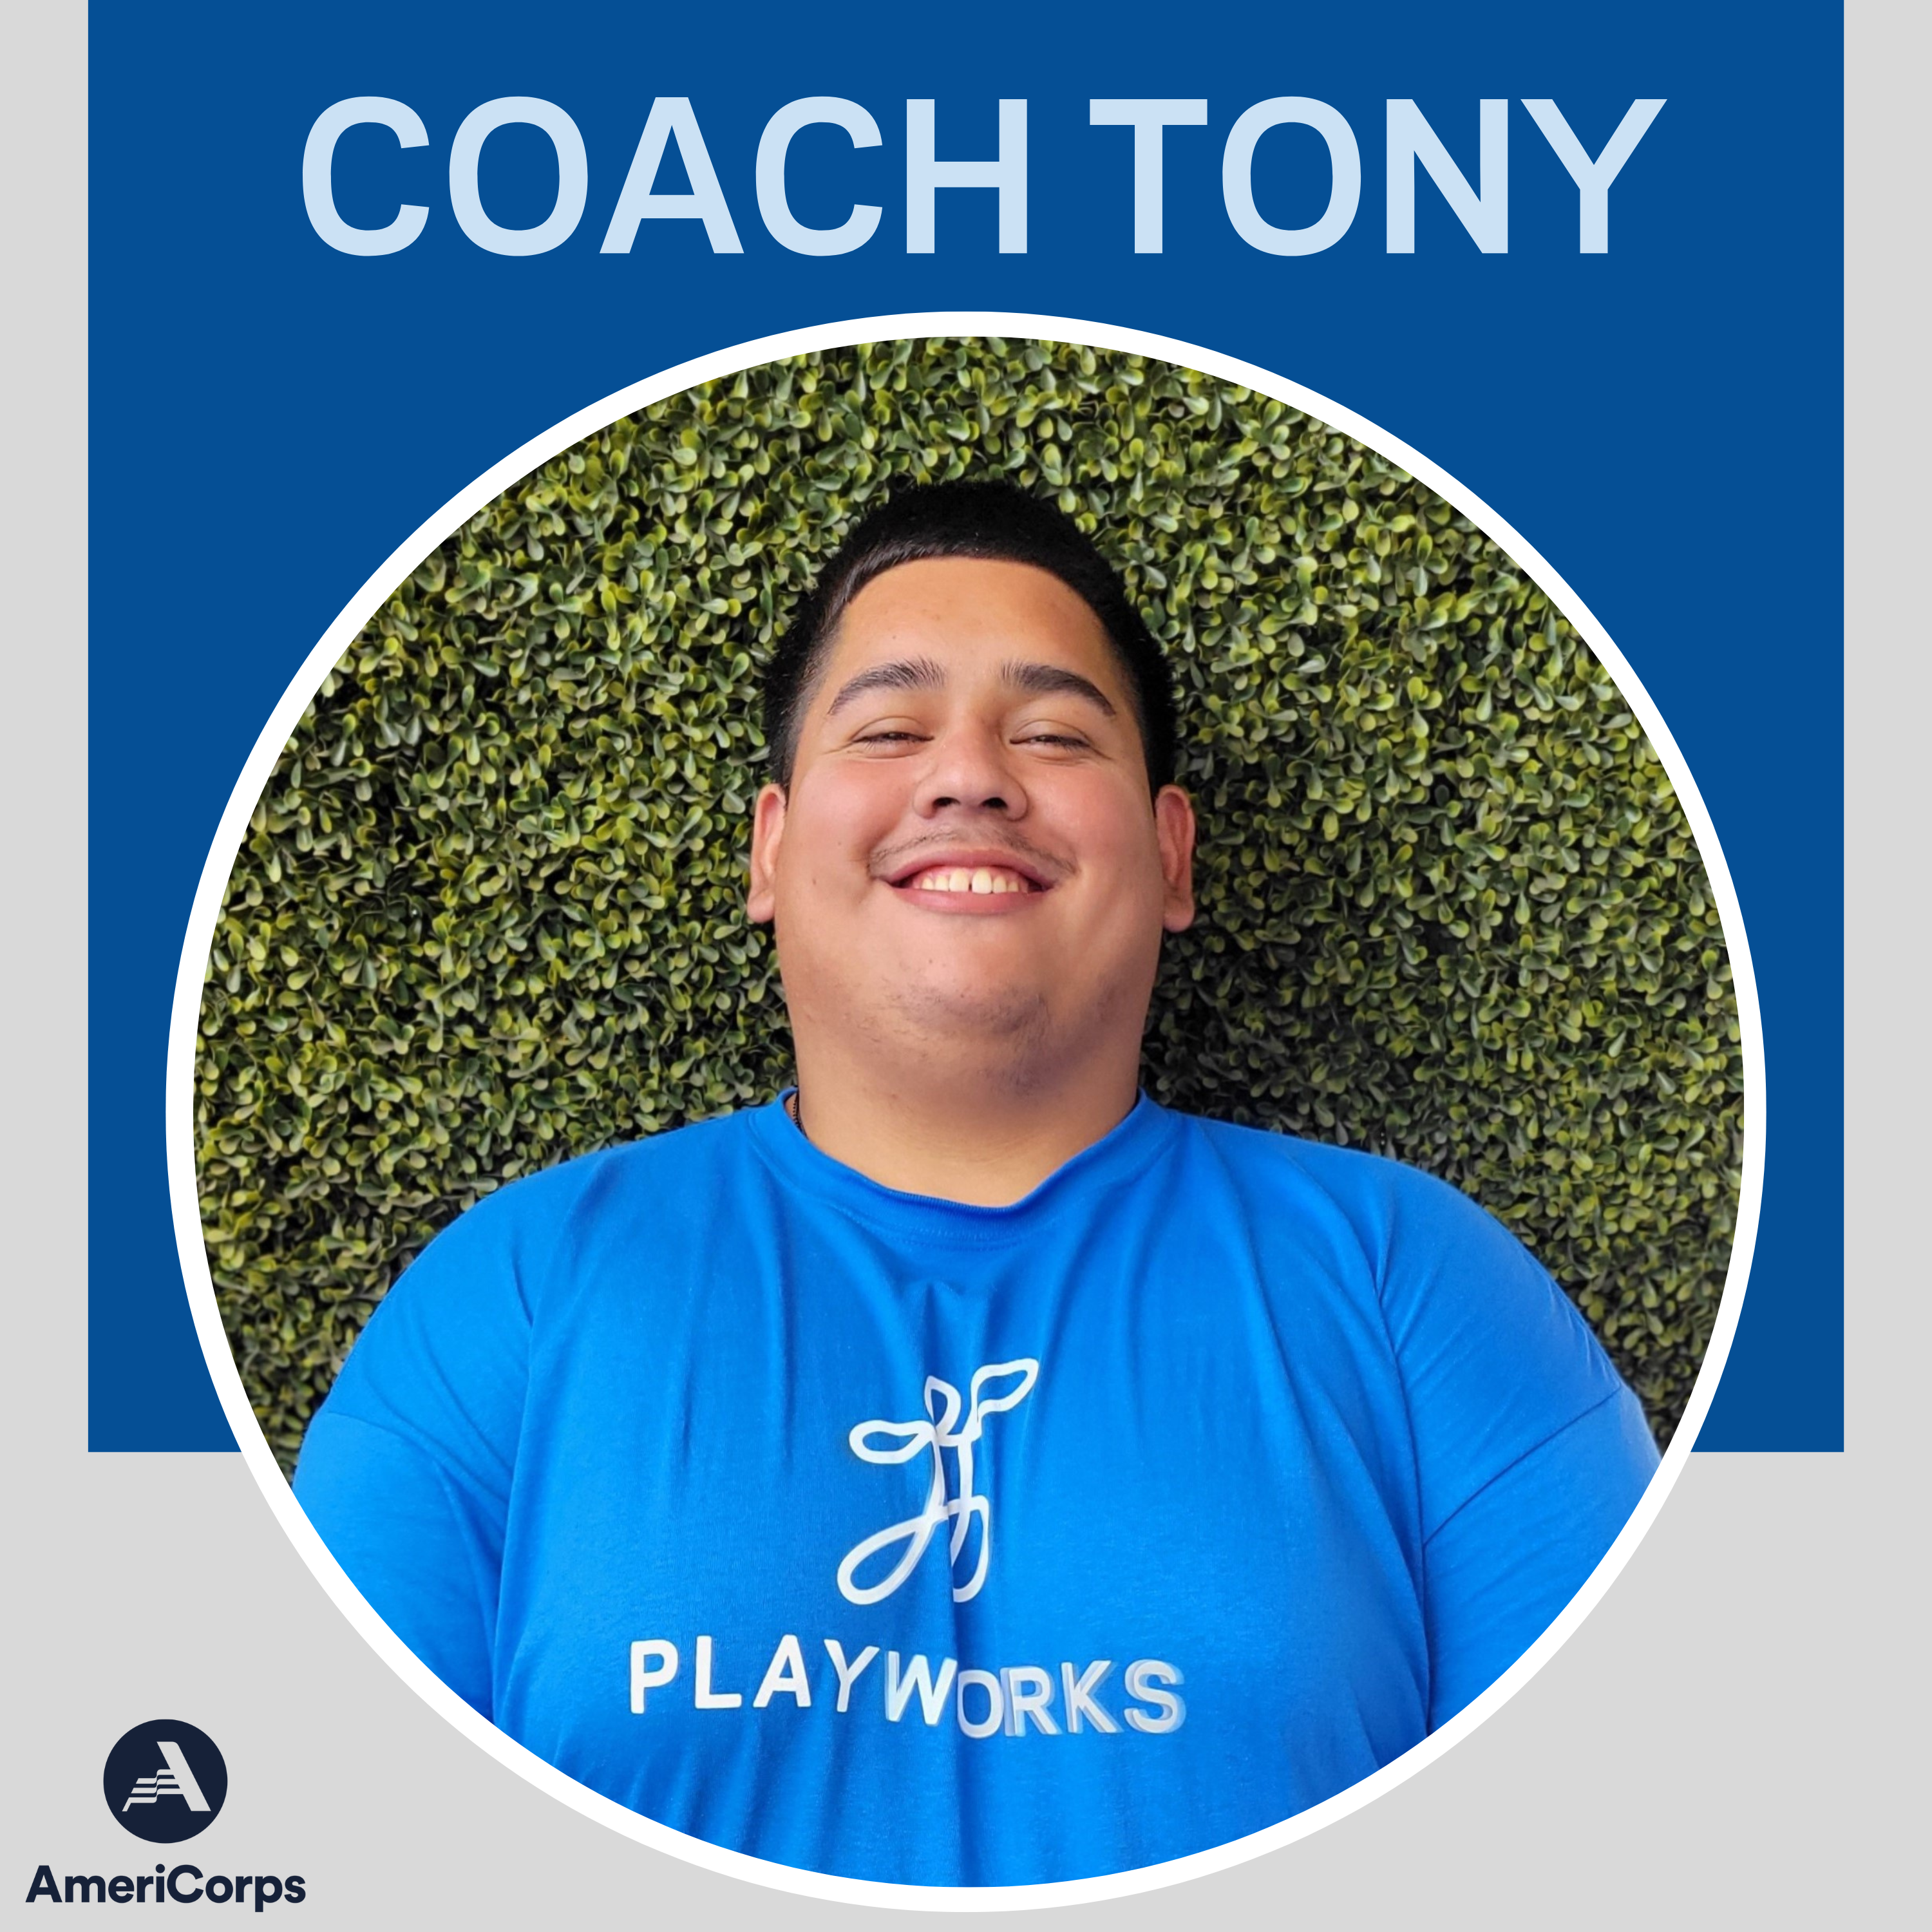 Coach Tony